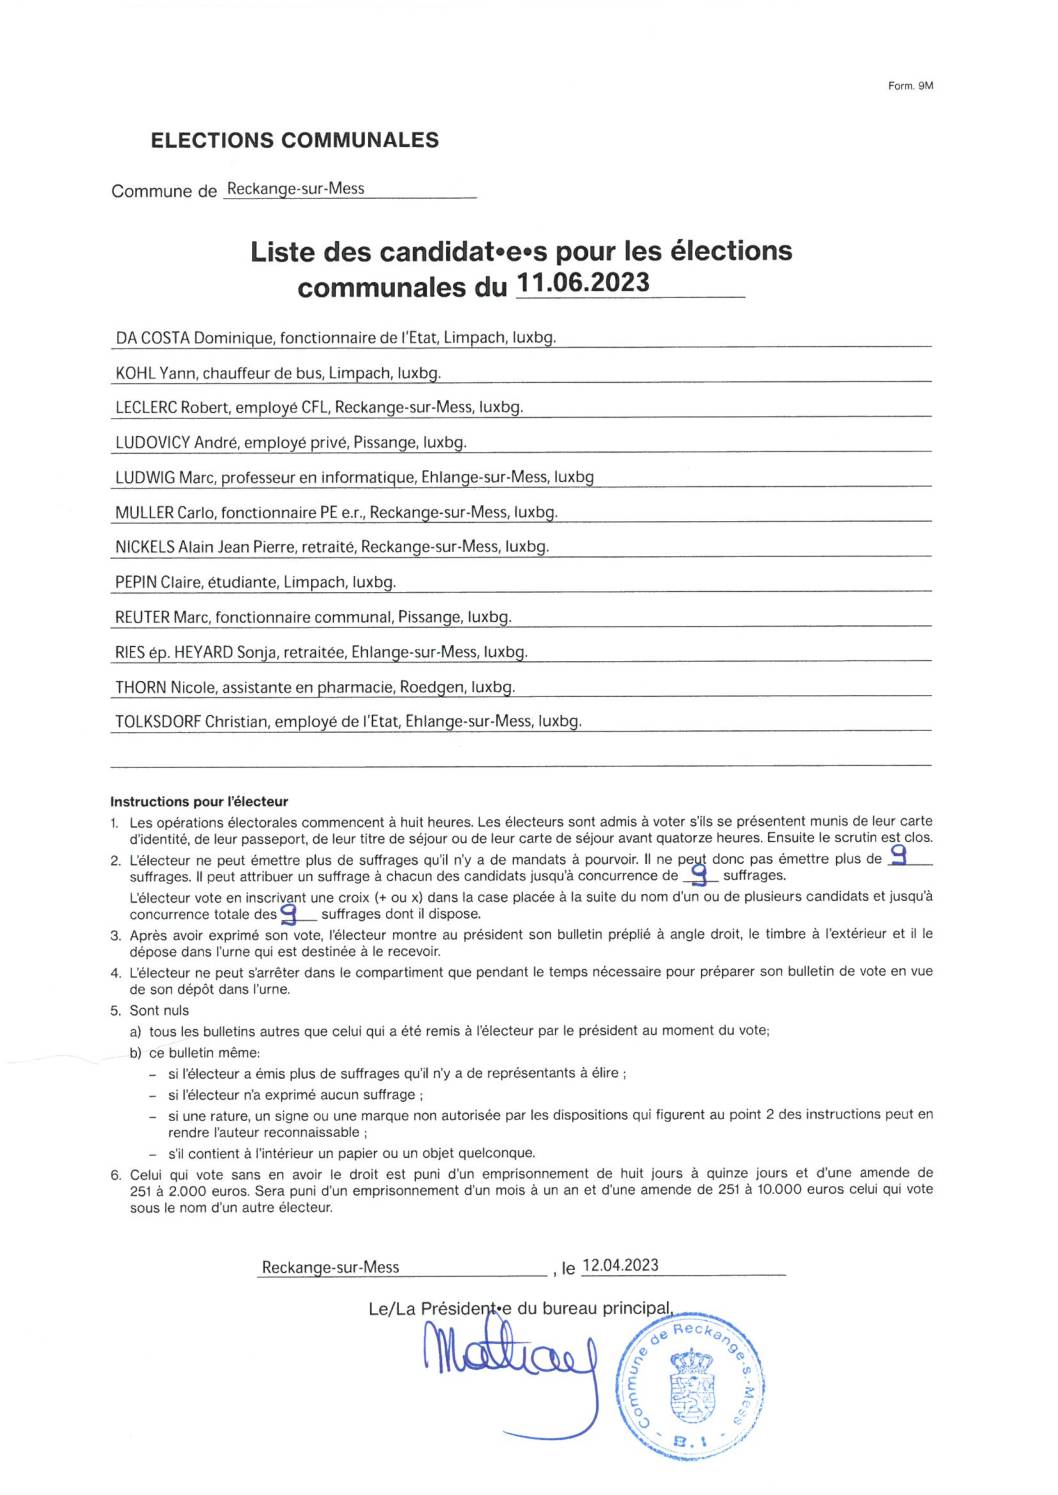 Liste des candidat.e.s. pour les élections communales du 11.06.2023